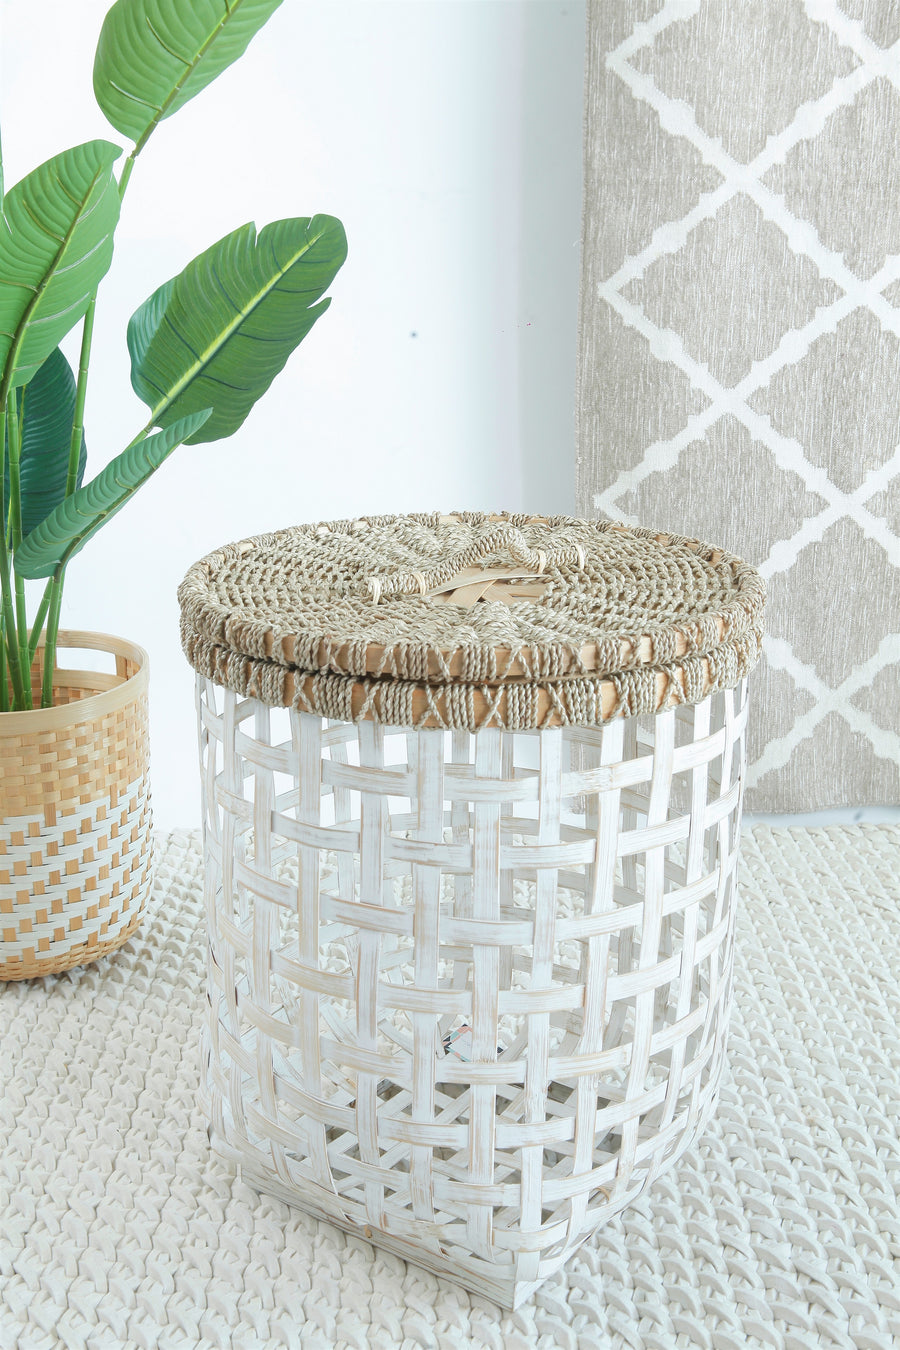 Bamboo Cage Laundry Basket - White - Large